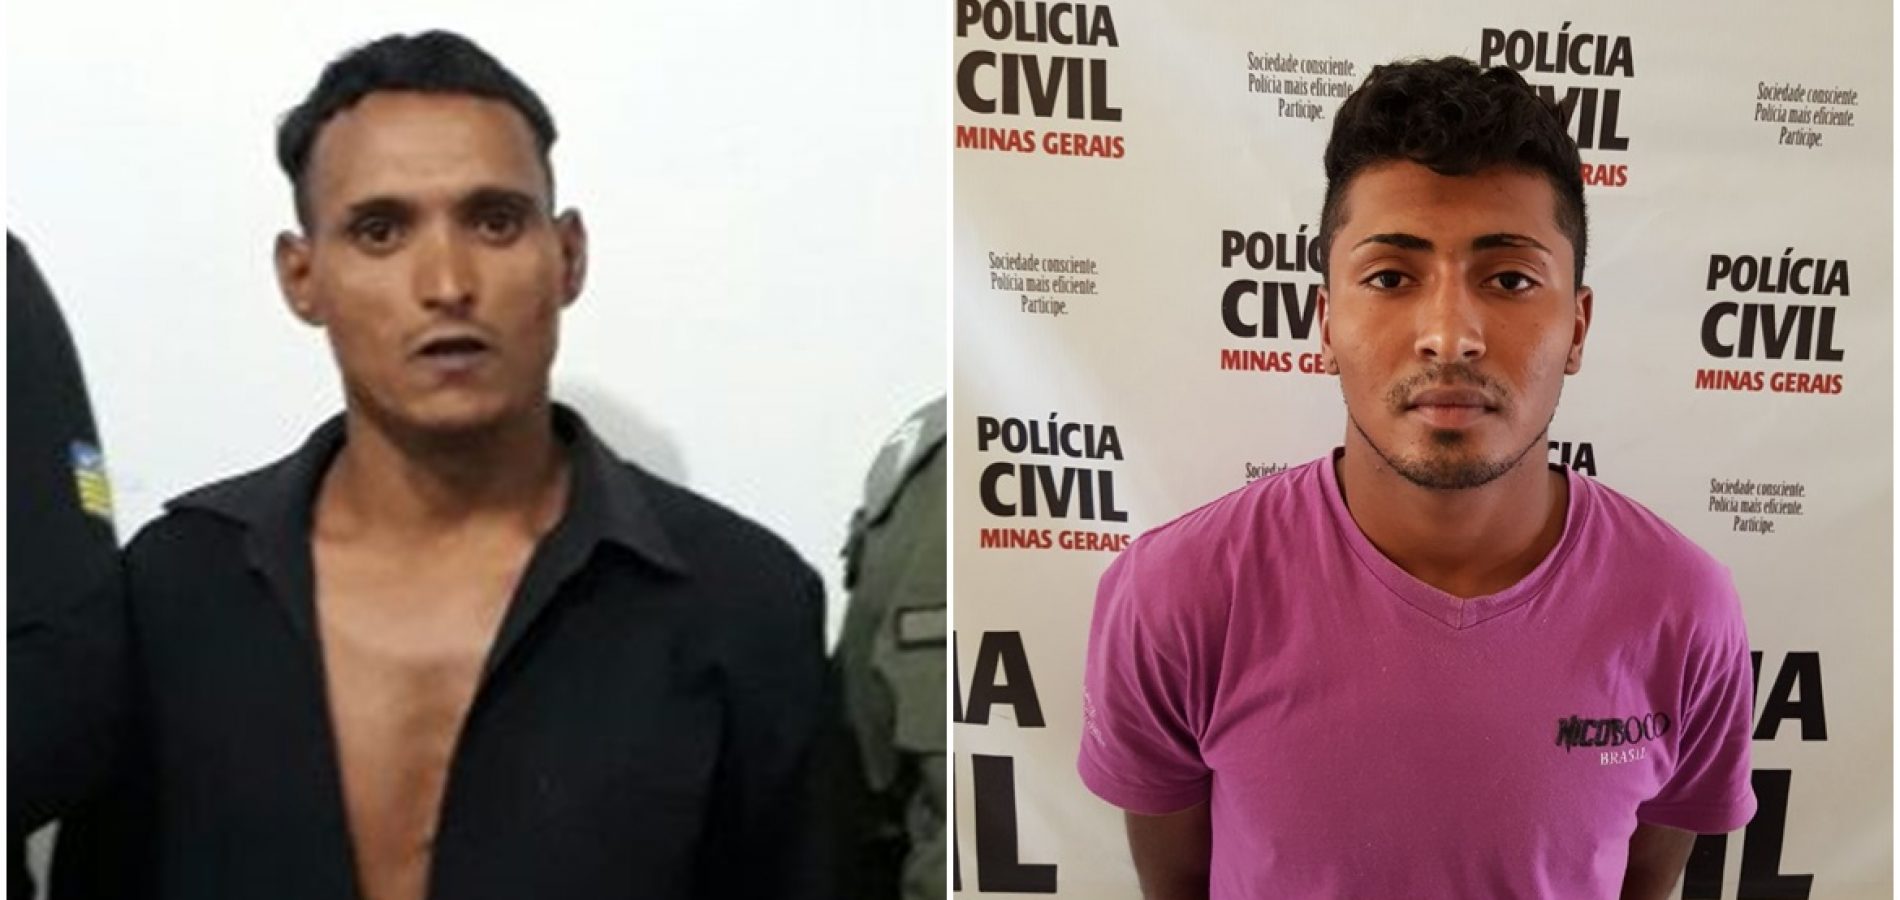 Justino da Costa Figueiredo, de 34 anos e Deyvit de Souza Figueiredo, de 20 anos